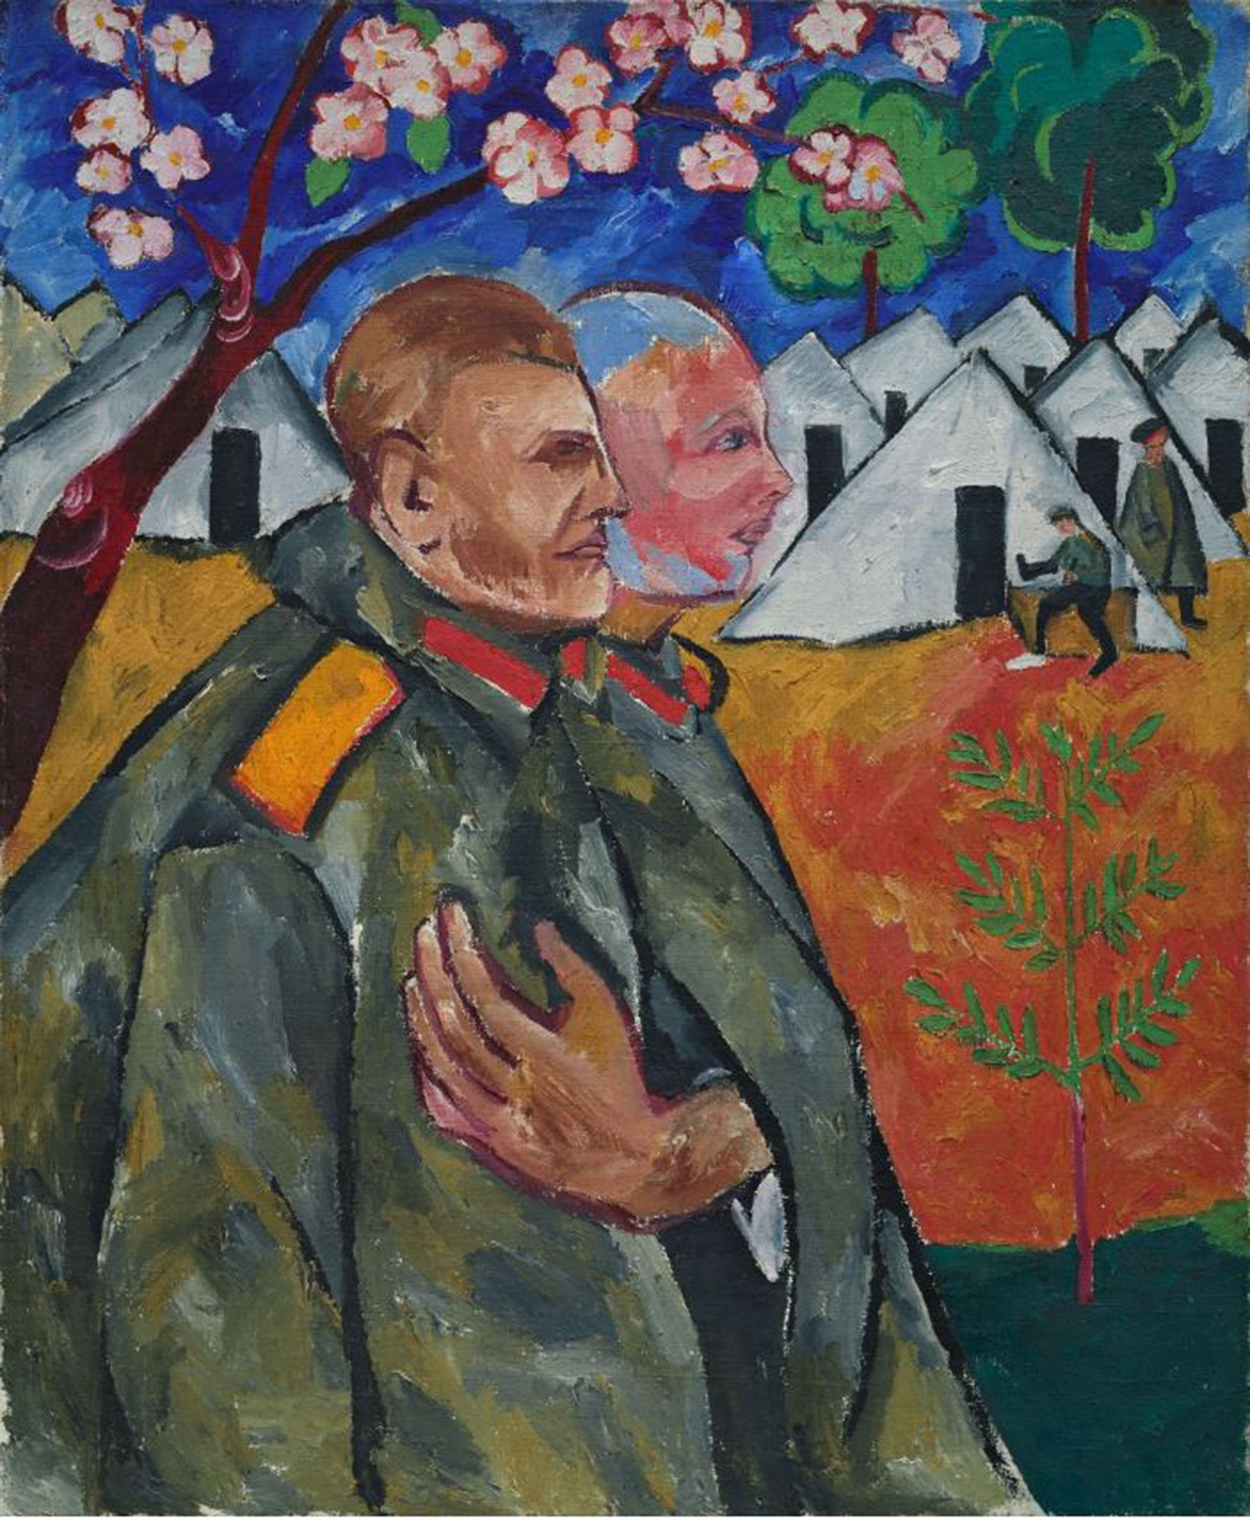 米哈伊尔·拉里奥诺夫和他的排长的肖像画 by 娜塔莉亚 · 冈察洛娃 - 1911 - 119 x 97 cm 